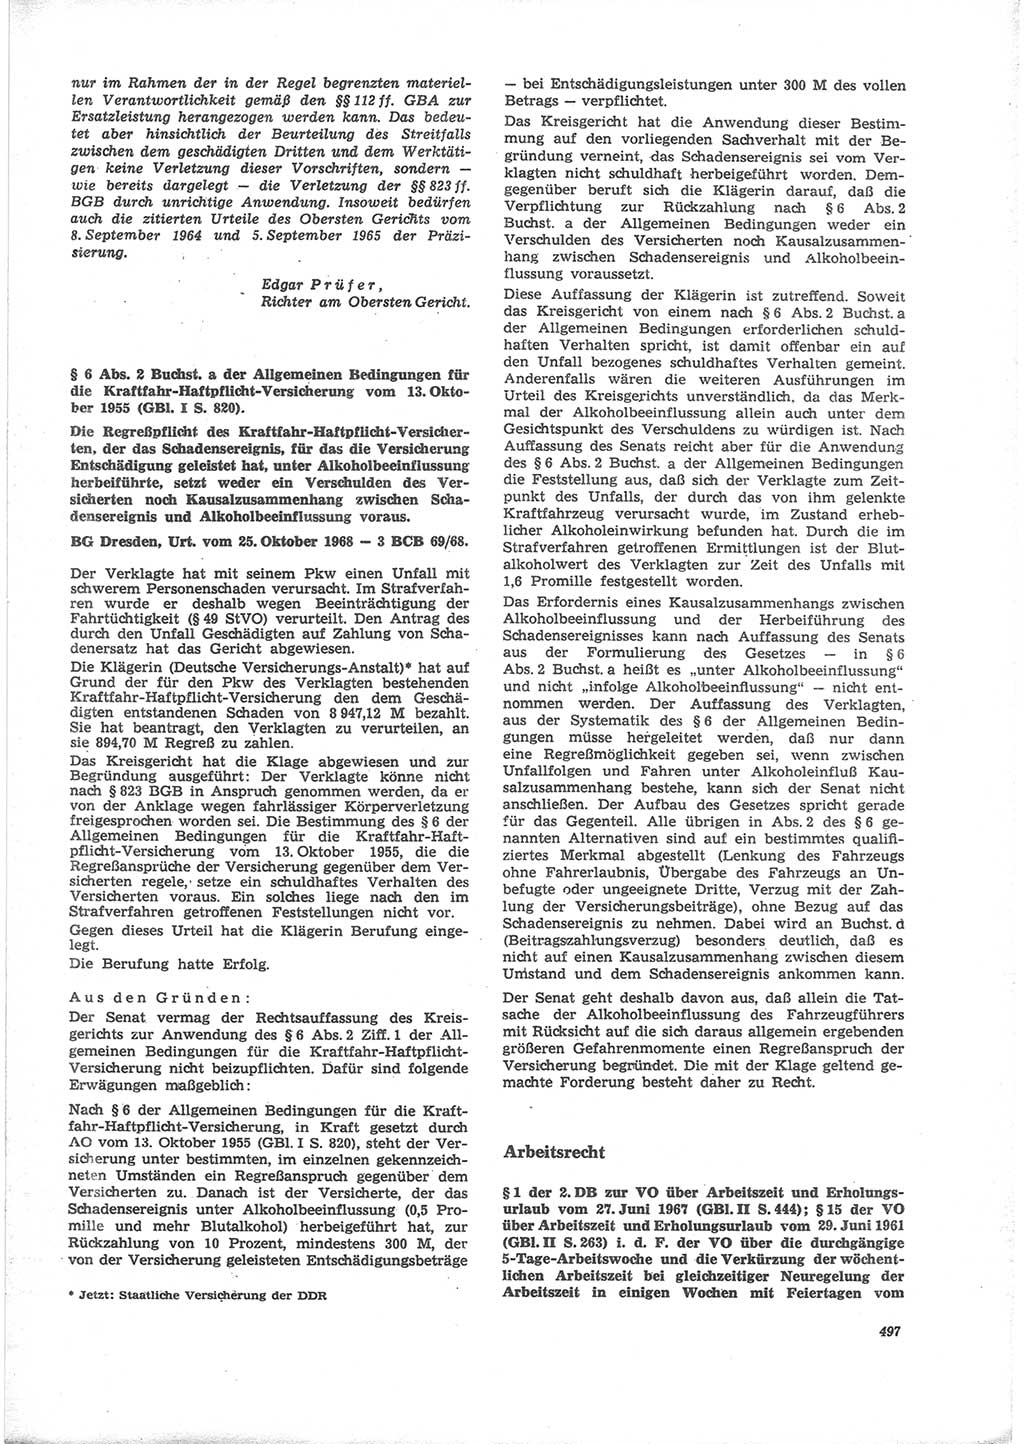 Neue Justiz (NJ), Zeitschrift für Recht und Rechtswissenschaft [Deutsche Demokratische Republik (DDR)], 24. Jahrgang 1970, Seite 497 (NJ DDR 1970, S. 497)